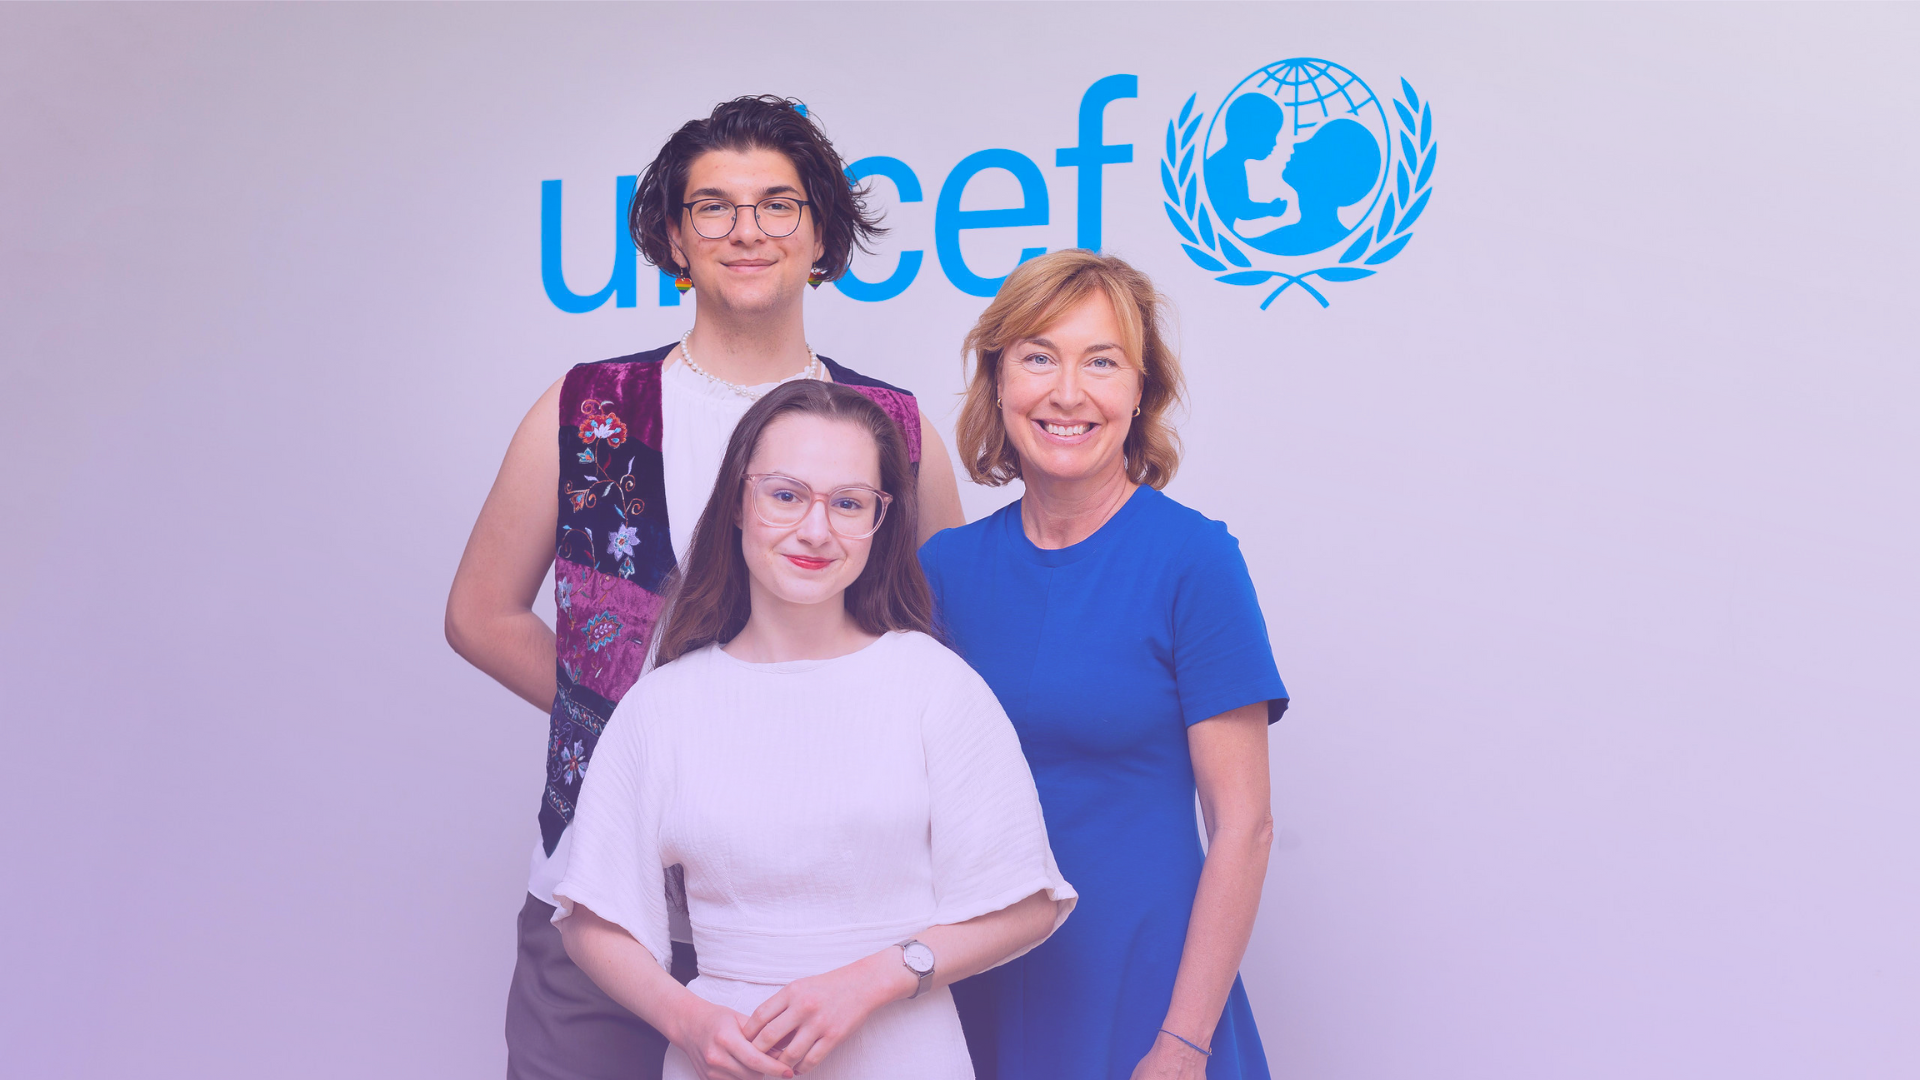 Foto på Elias Fjellander, Pernilla Baralt och Lilian Helgason framför en vit vägg med UNICEF:s logga i blått. Alla tittar in i kameran och ler.